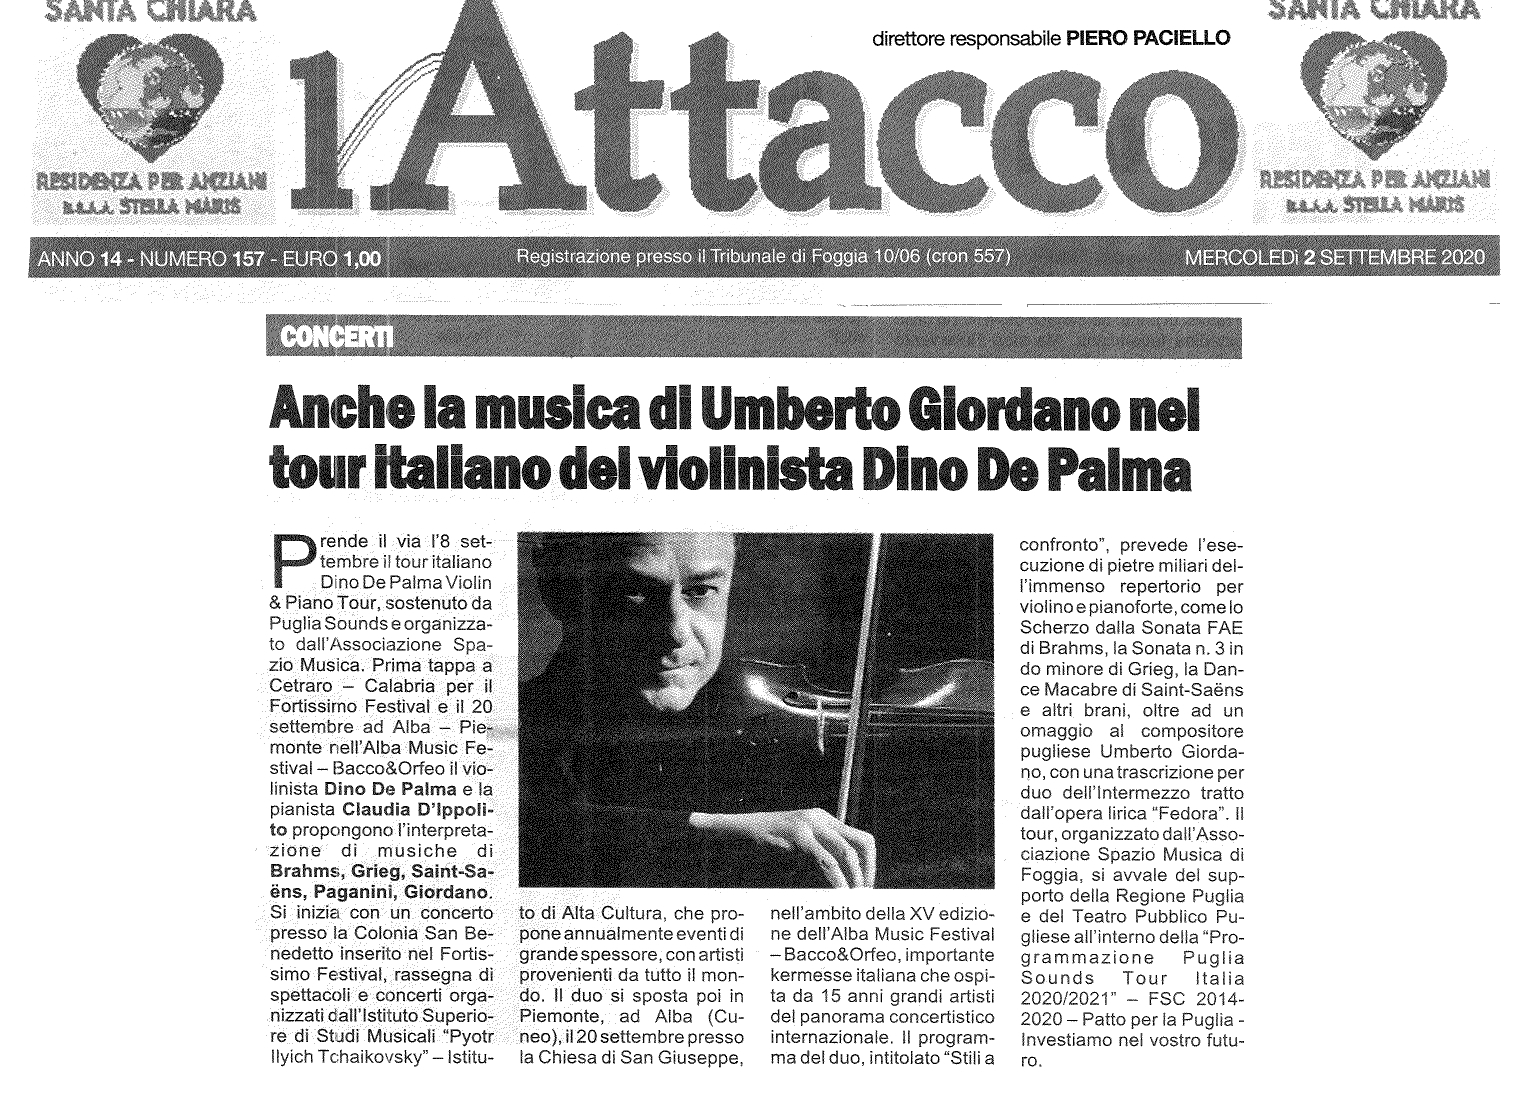 Dino De Palma Violin & Piano Tour Quotidiano L’Attacco, 2 settembre 2020